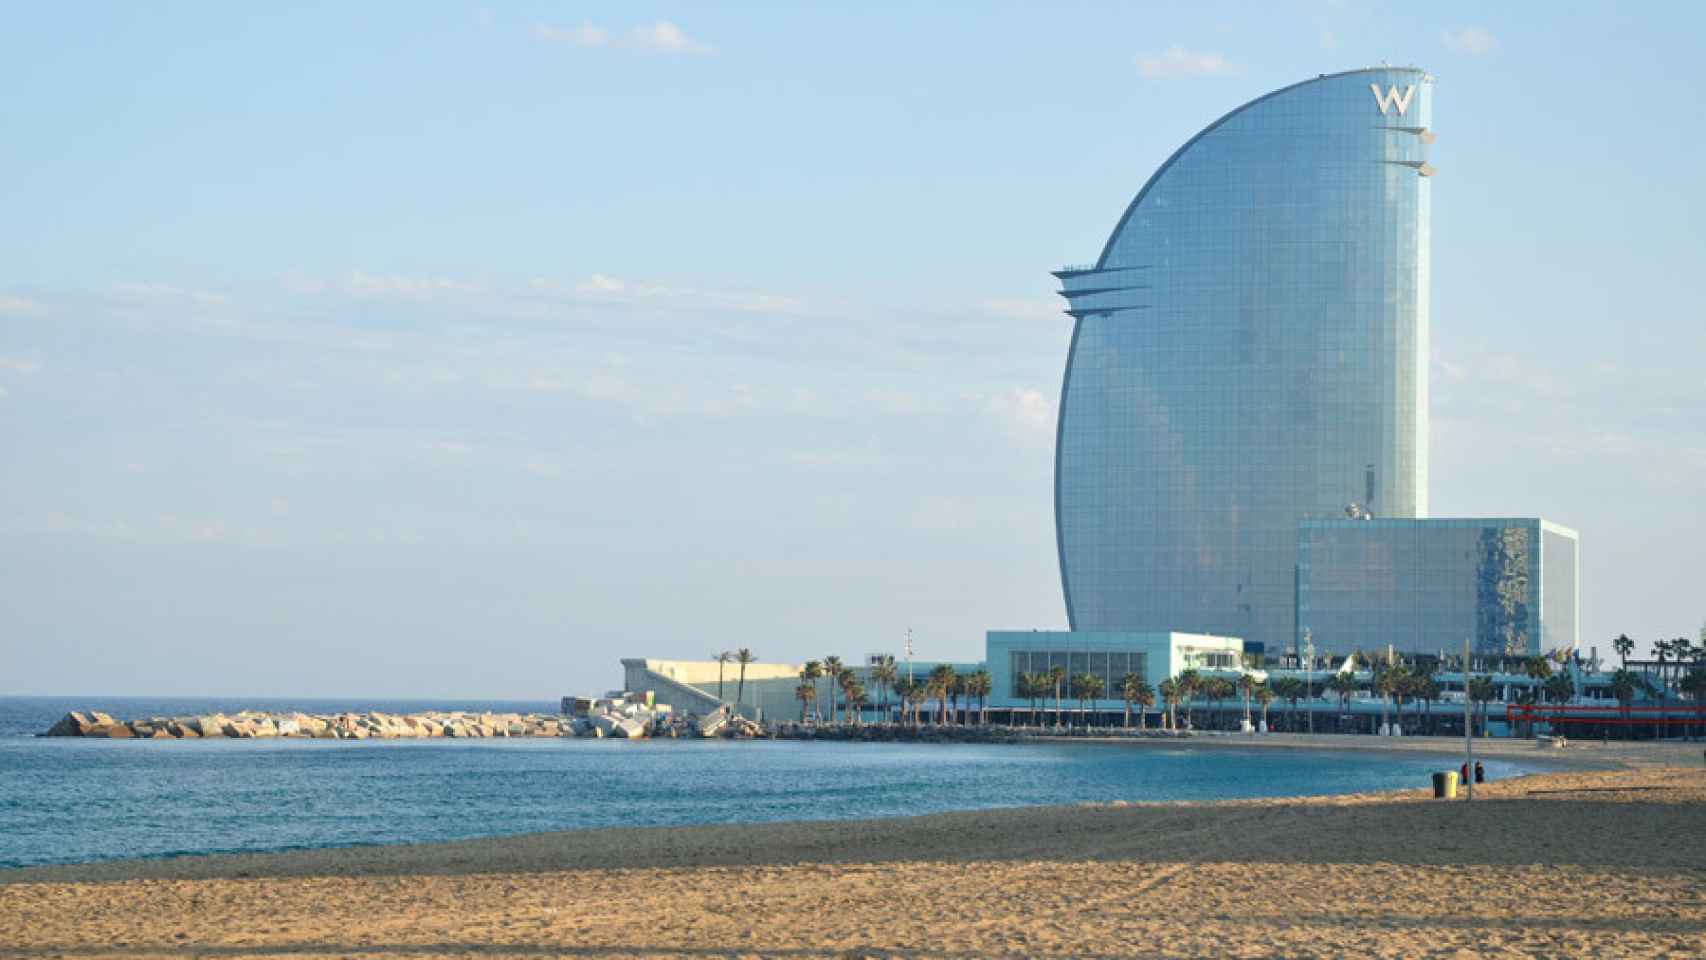 Las playas de Barcelona presentan una buena calidad en el agua